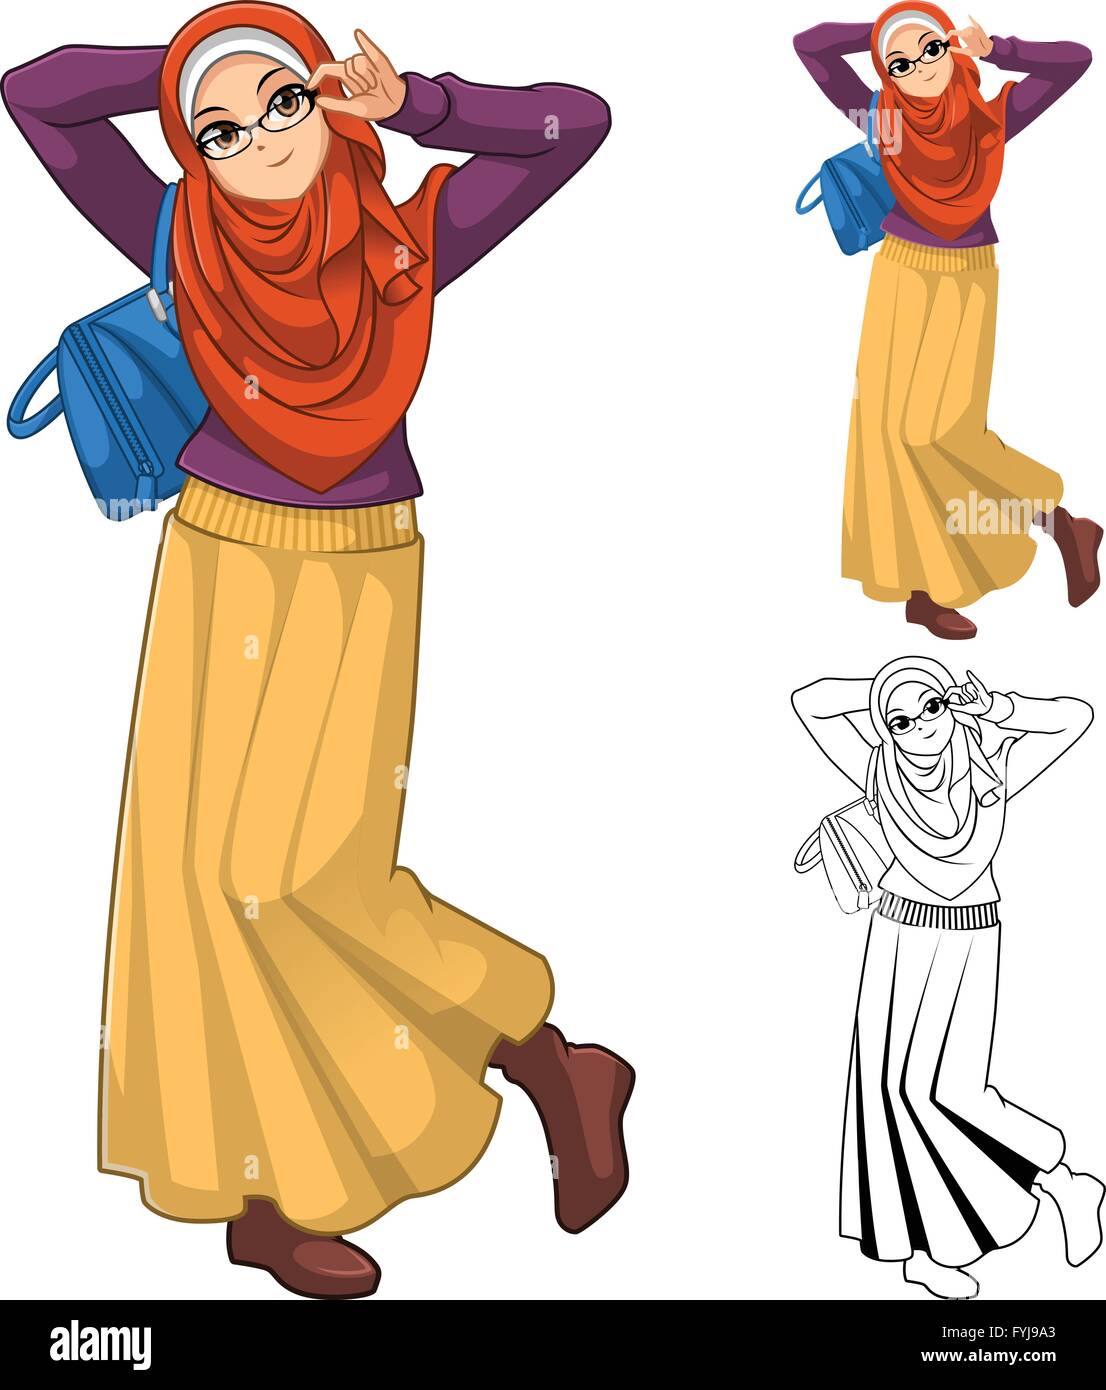 Muslimische Frau Mode tragen Orange Schleier oder Schal mit blauen Tasche und Rock Outfit gehören flache Bauweise und skizzierte Version Stock Vektor